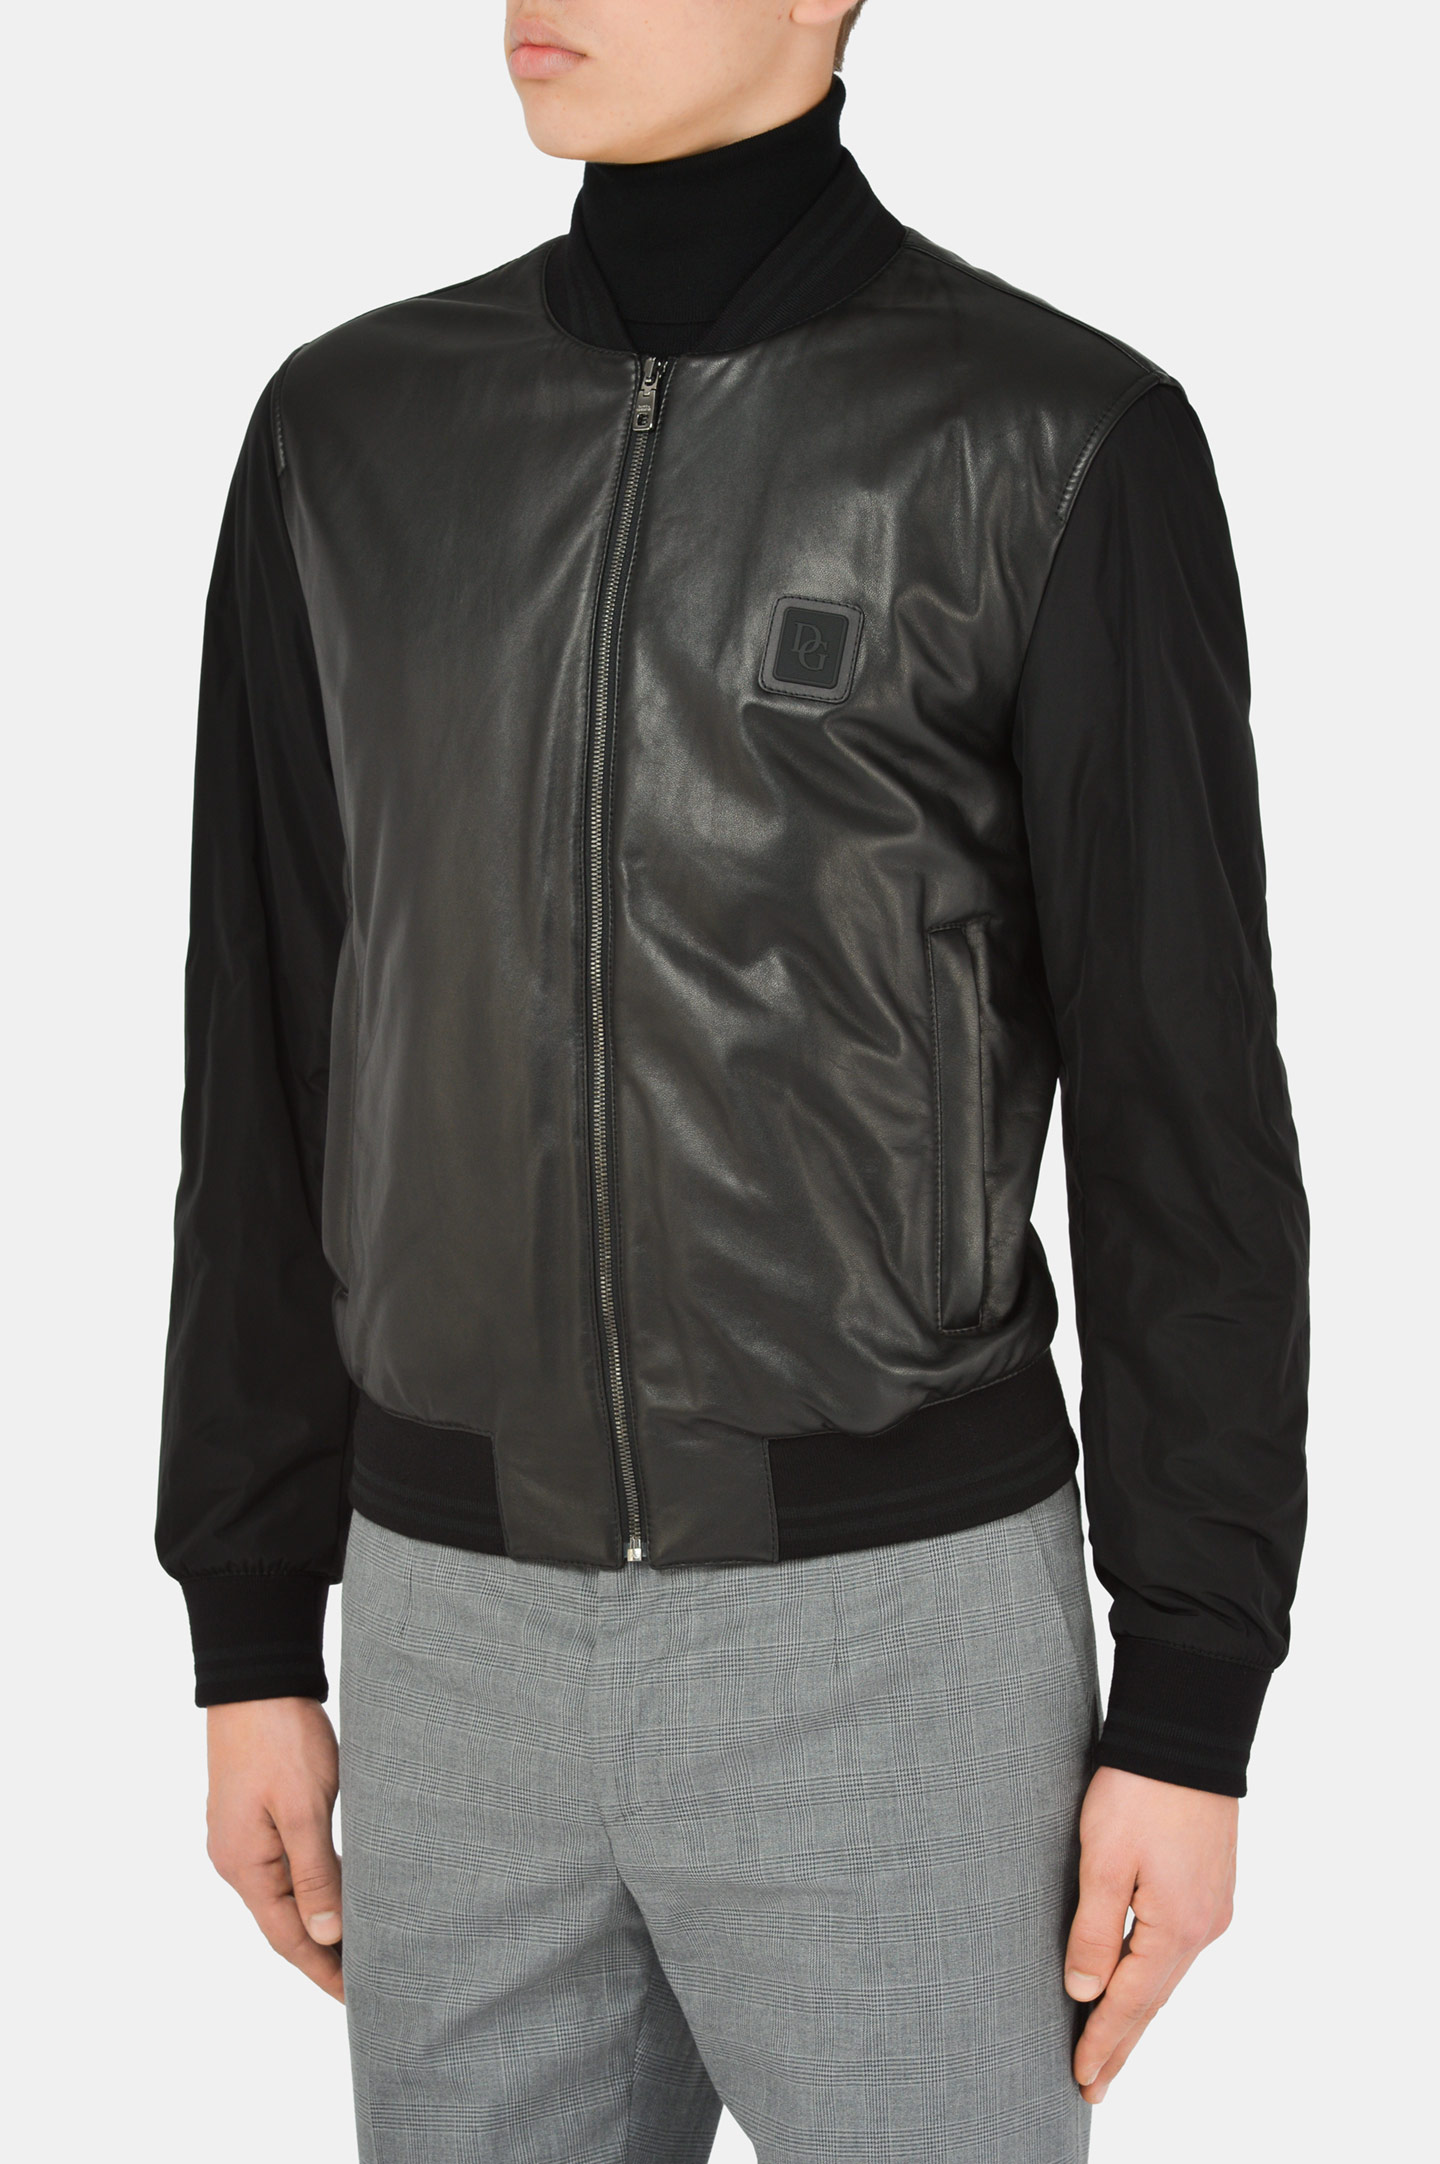 Куртка DOLCE & GABBANA G9TS4L GEO40, цвет: Черный, Мужской